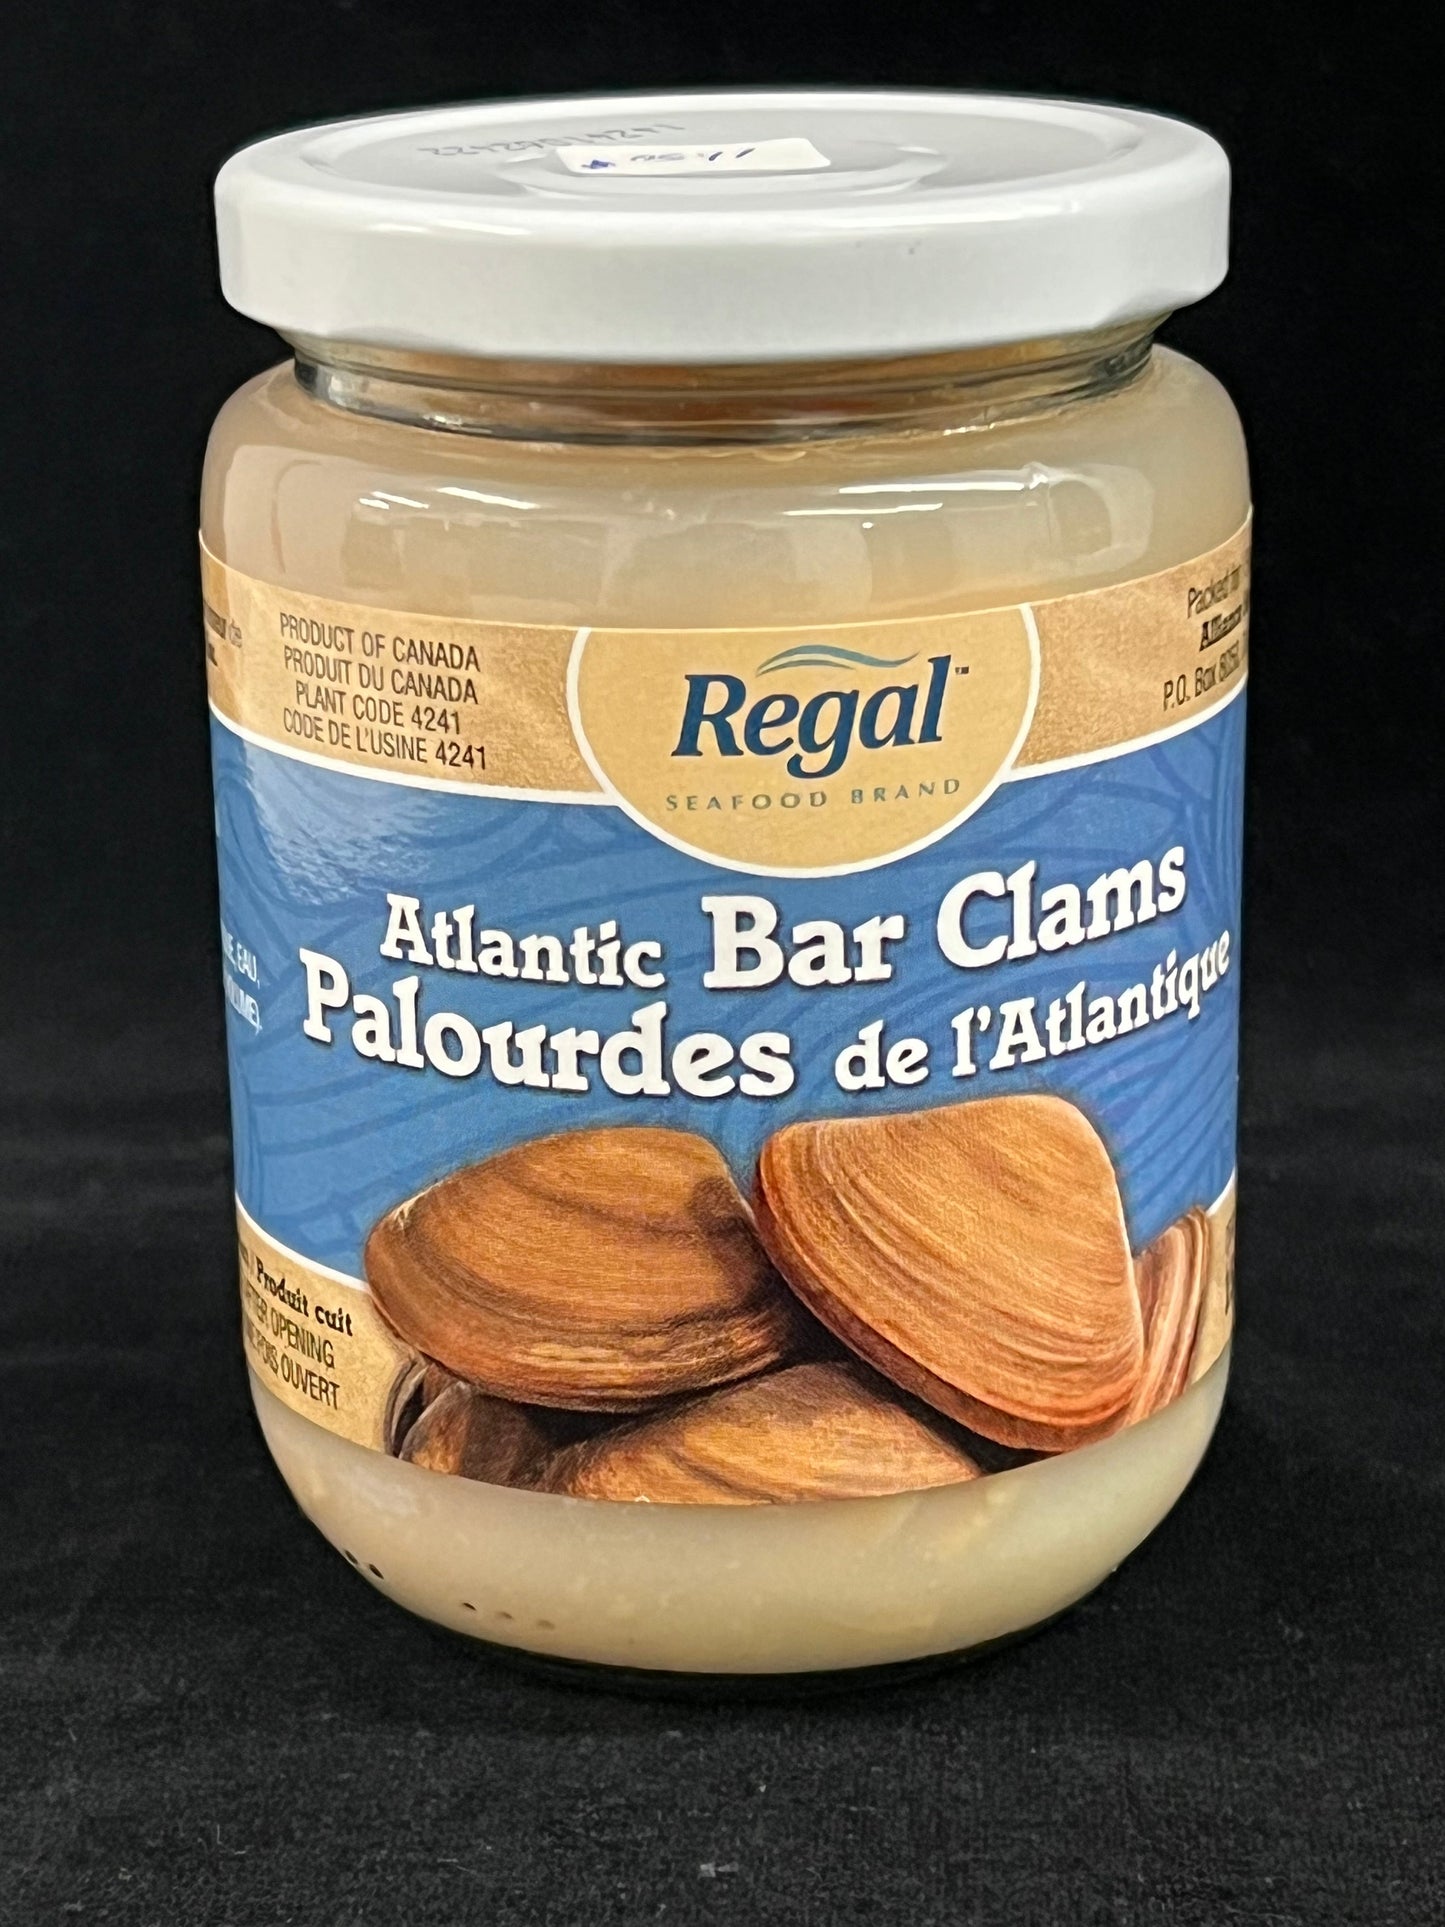 Regal Seafood Brand -  Palourdes de l'Atlantique / Artic Bar Clams - Boîte de 12